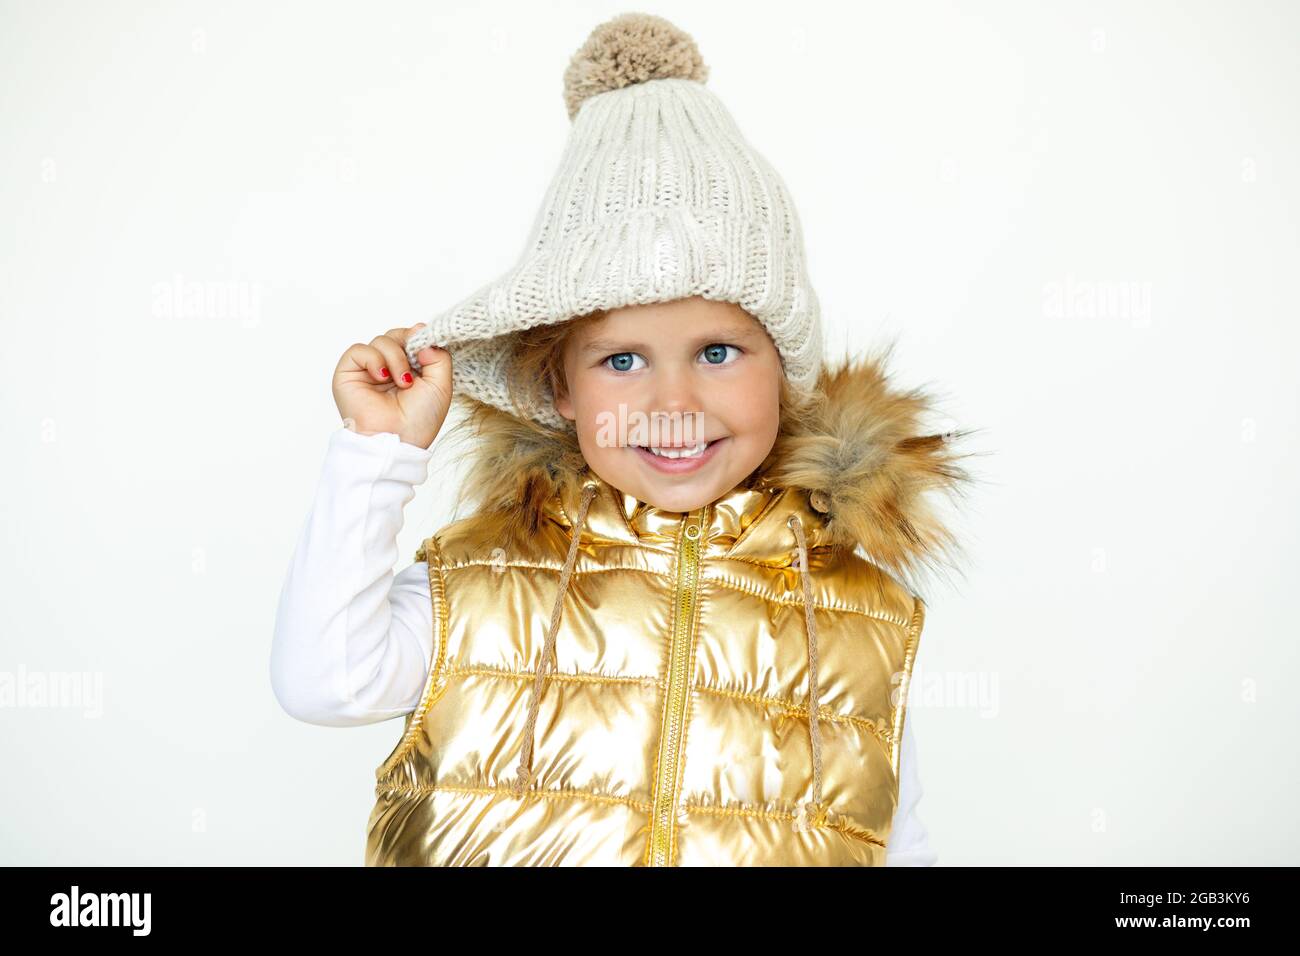 Moda infantil. Foto de niña en cálido sombrero de lana natural y chaleco dorado abrigo niños con capucha, foto Fotografía de stock Alamy